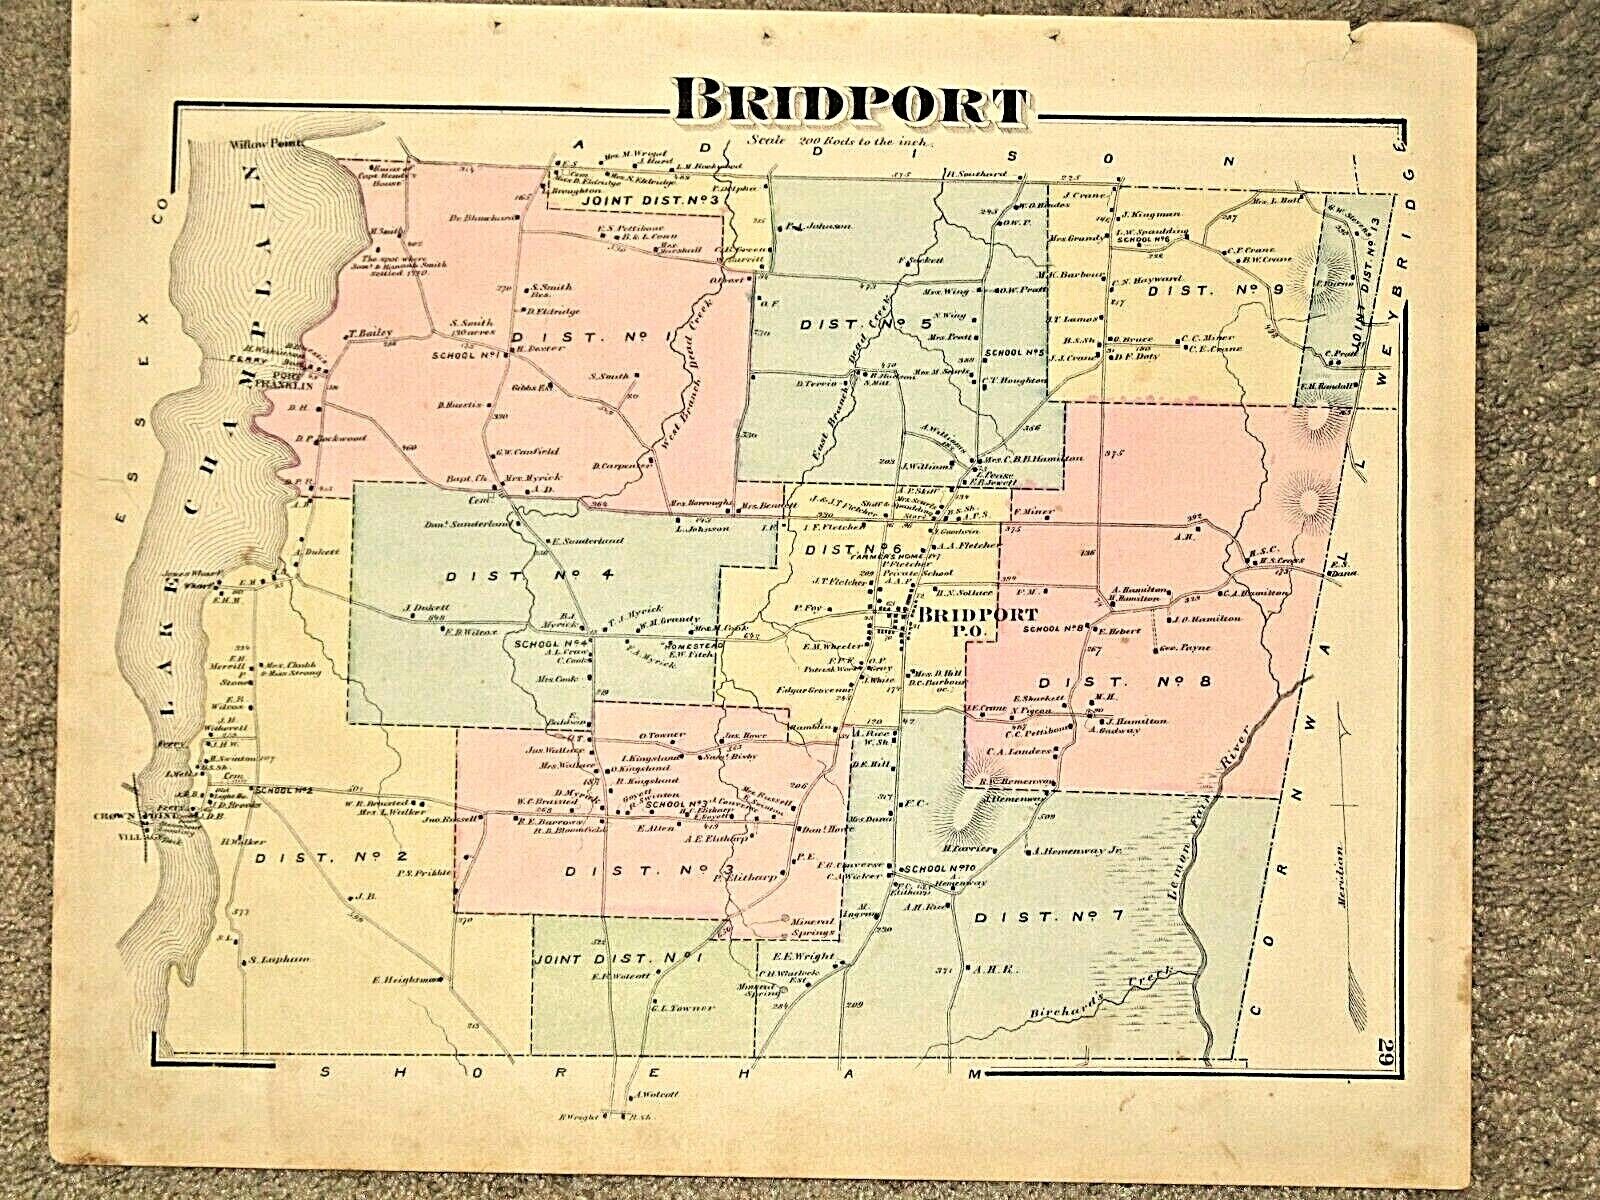 BRIDPORT, VT., VINTAGE HAND COLORED 1871 MAP.  NOT A REPRINT